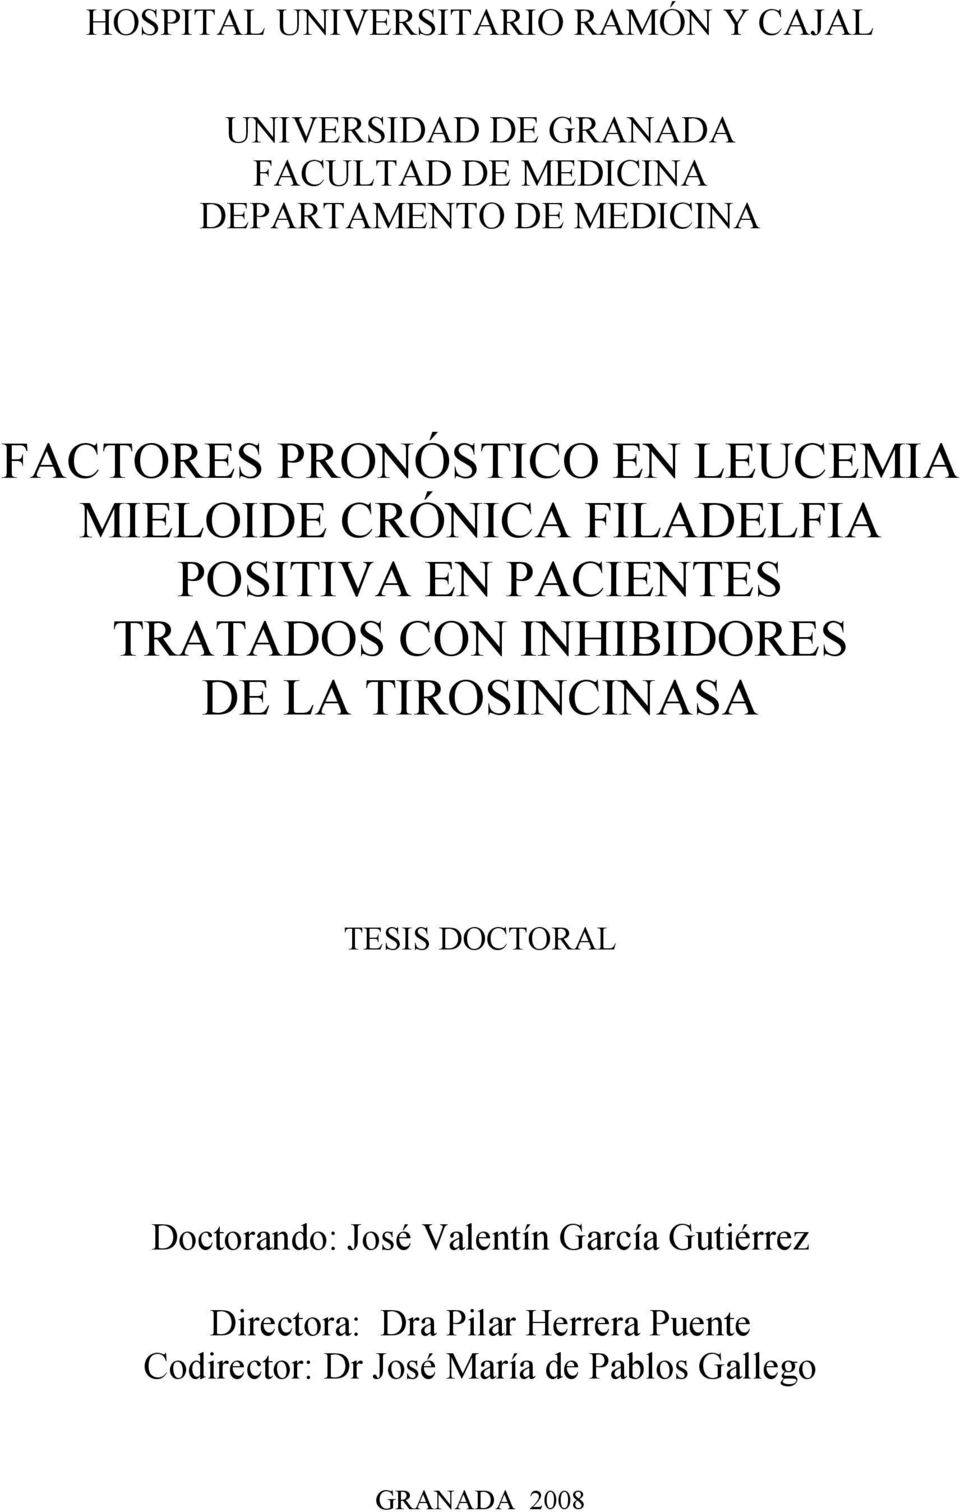 TRATADOS CON INHIBIDORES DE LA TIROSINCINASA TESIS DOCTORAL Doctorando: José Valentín García